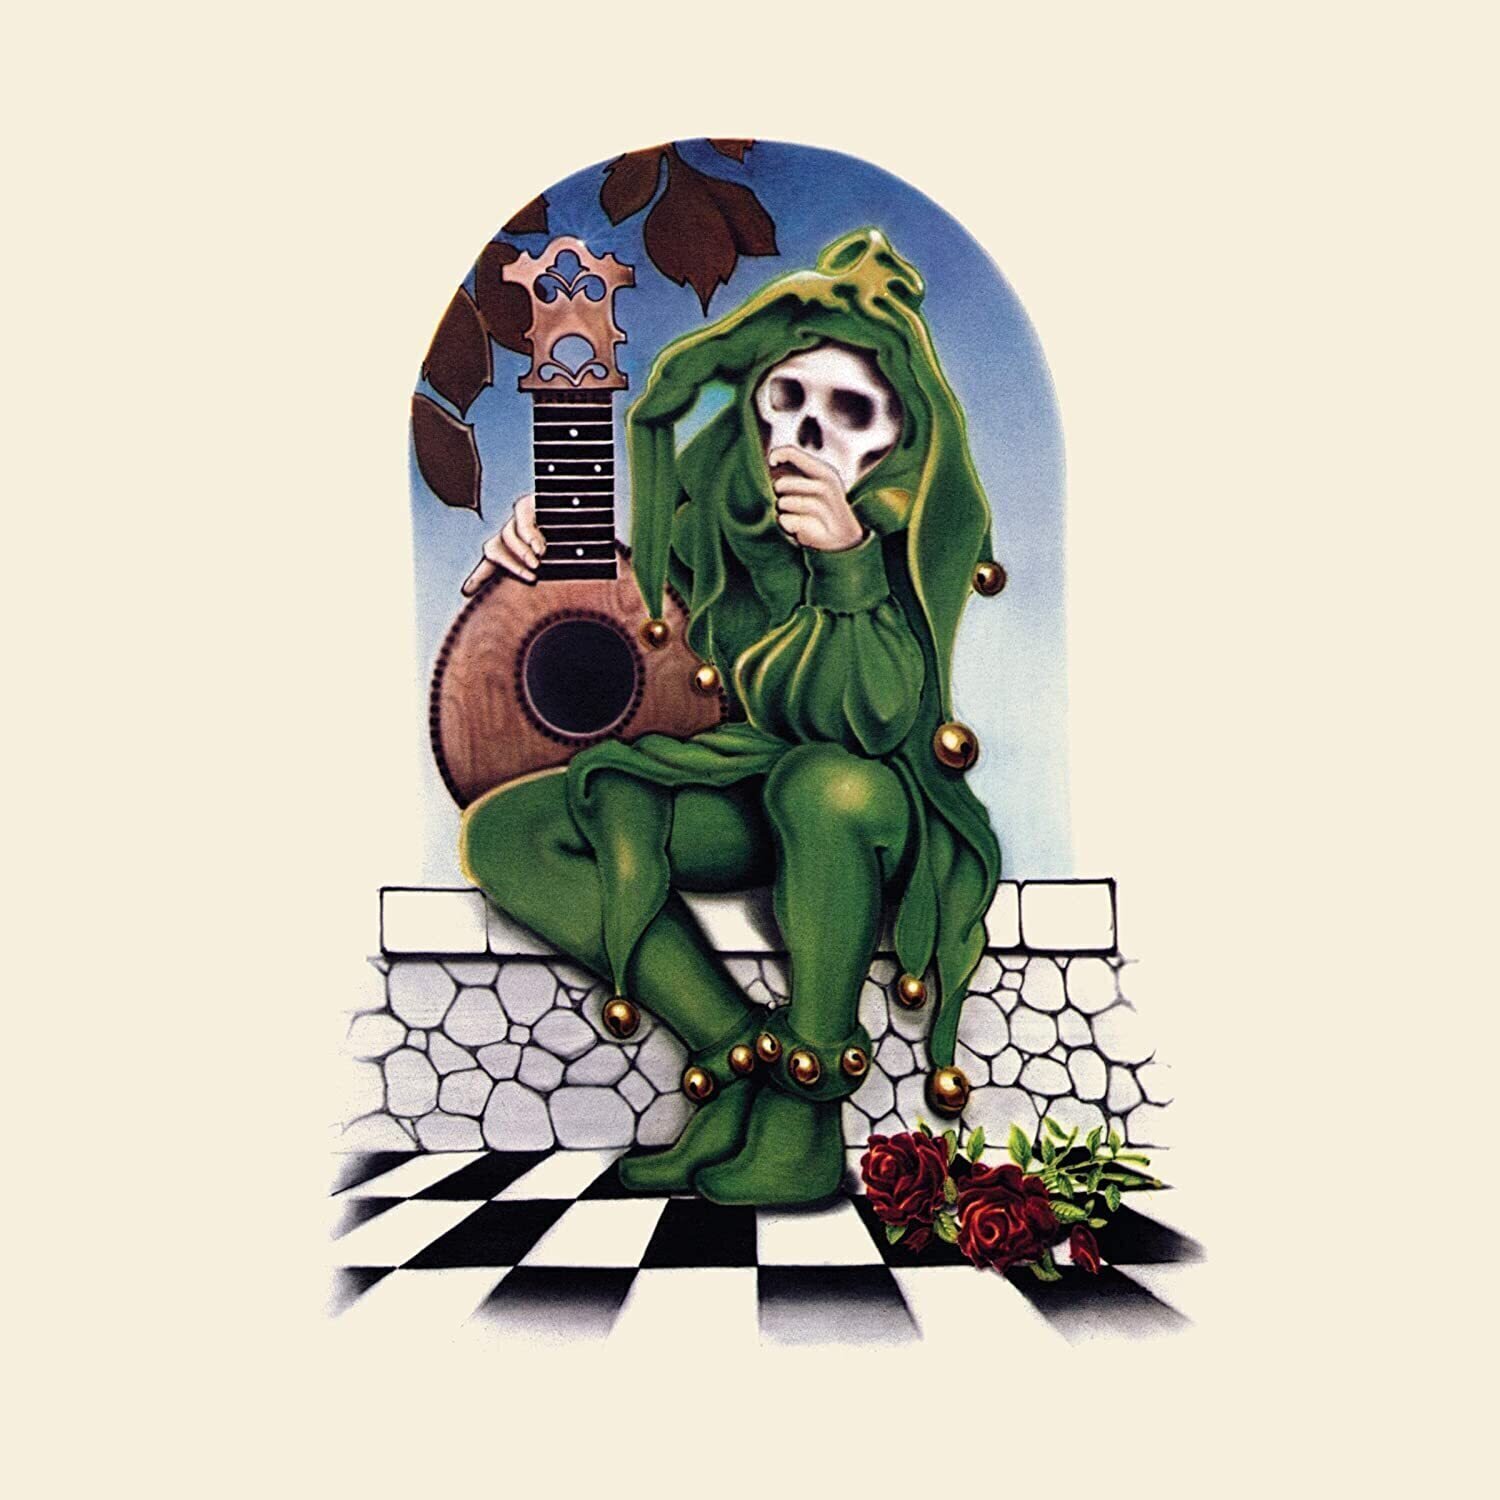 LP deska Grateful Dead - RSD - Grateful Dead Records Collection (5 LP)